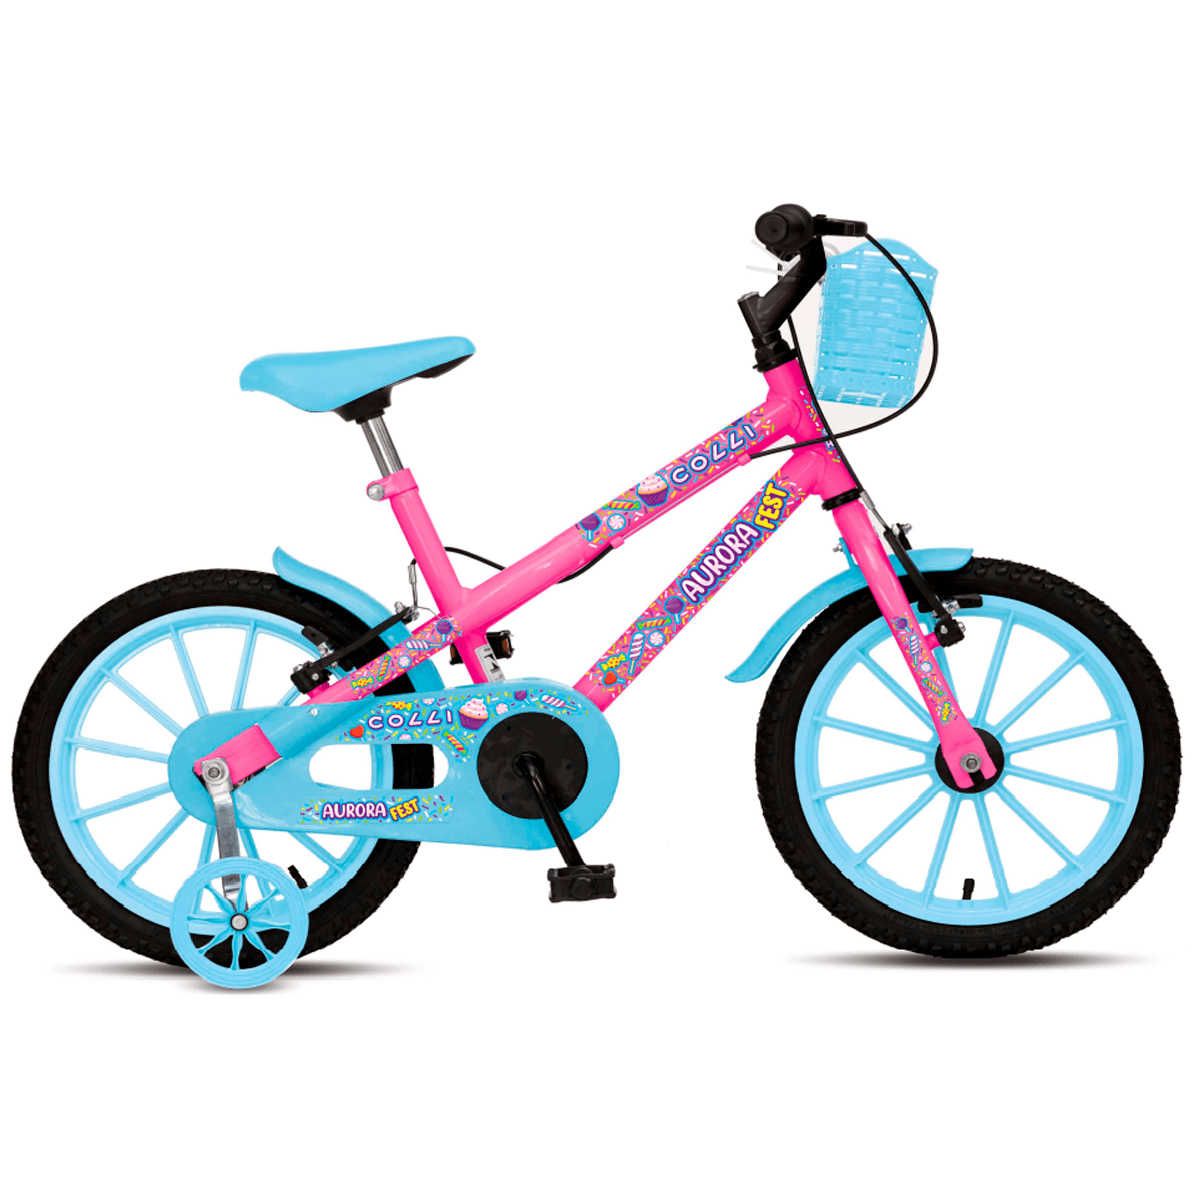 Bicicleta Colli Aurora Fest Aço Carbono Aro 16 Freios V-Brake Rodas de Apoio e Cestinha Azul/Rosa